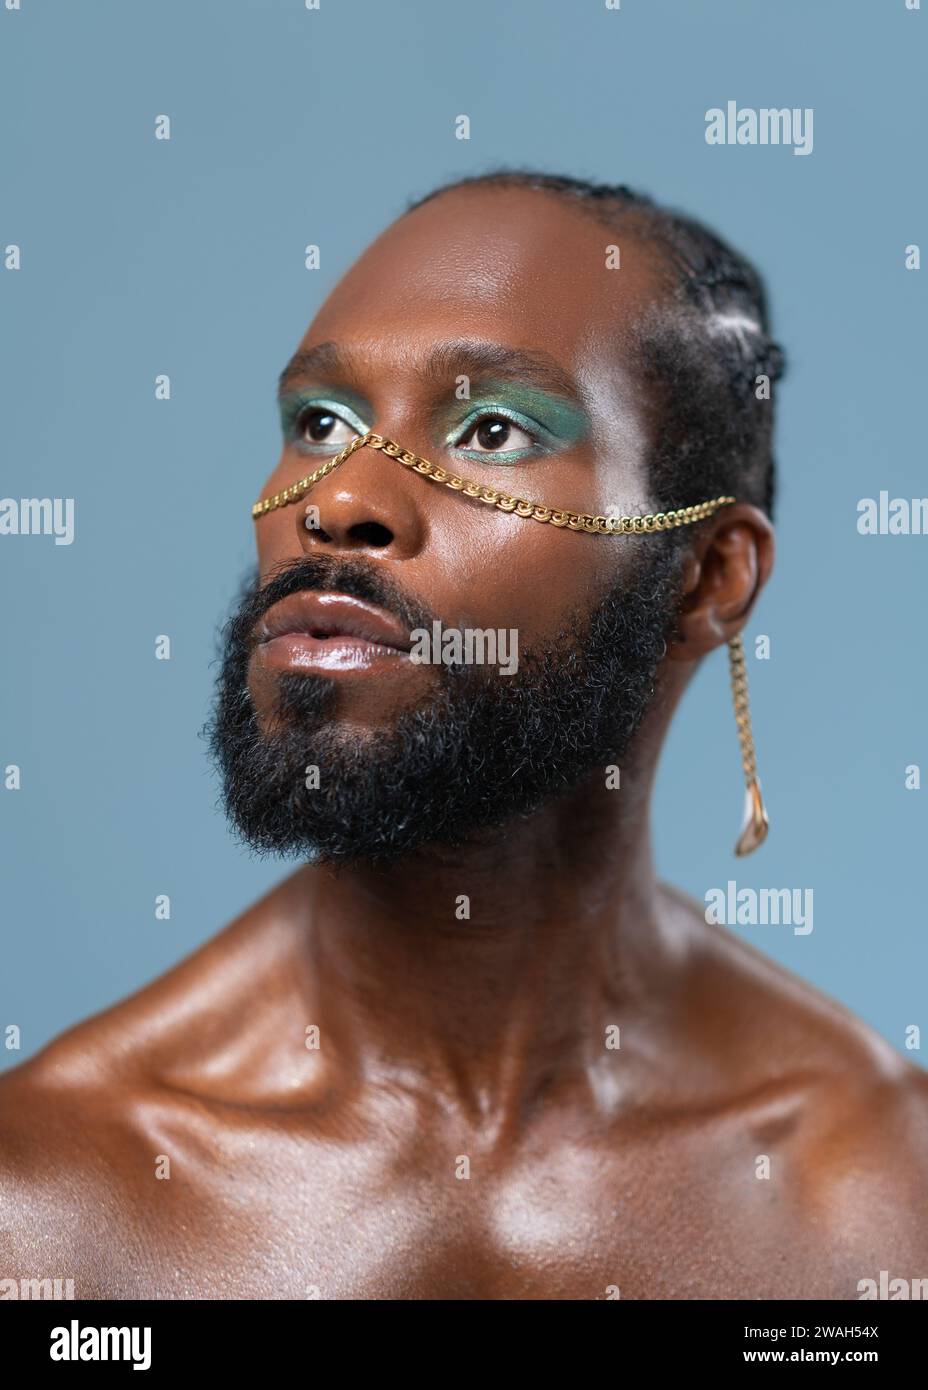 Homme gay afro-américain confiant barbu avec maquillage lumineux isolé sur fond bleu, Close up portrait. Respire le sens de la fierté et de l'individualité. Pouvoir de diversité du style personnel. Banque D'Images